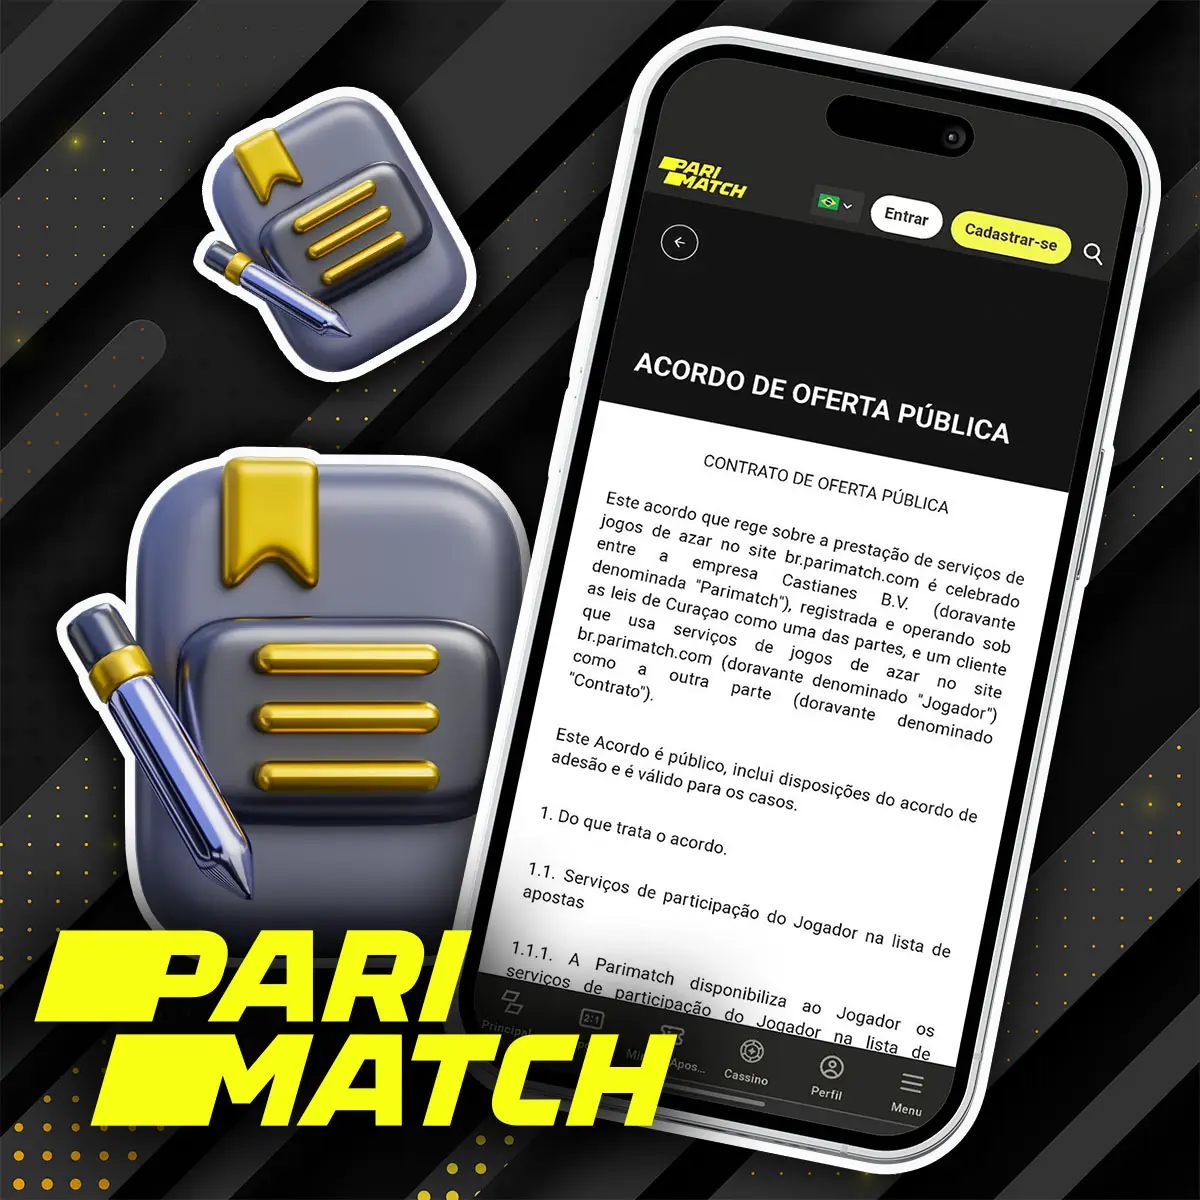 Oferta Pública Parimatch Brasil - Acordo vinculativo com a Partimatch